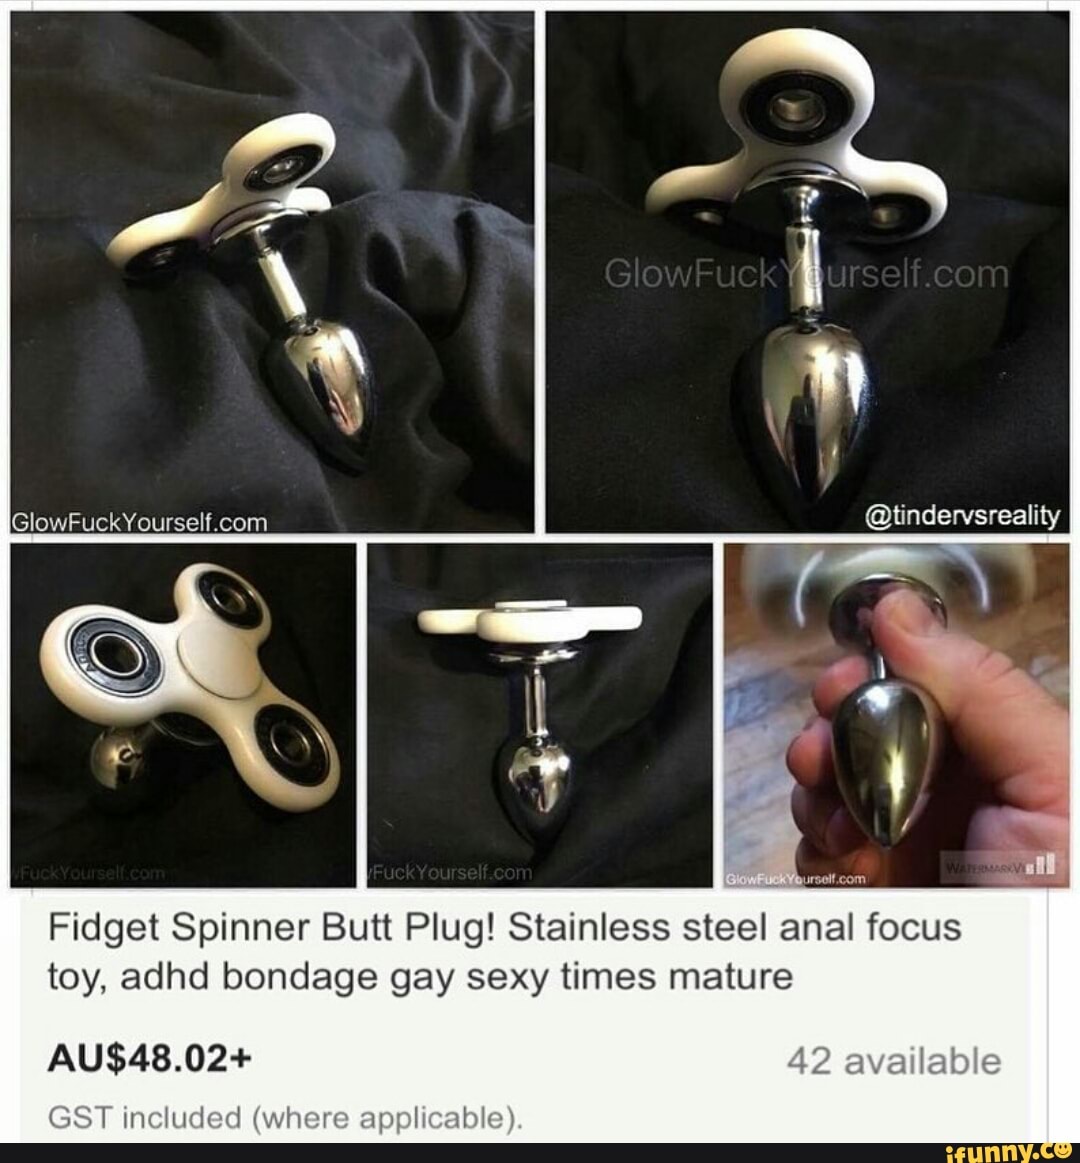 Fidget spinner in ass